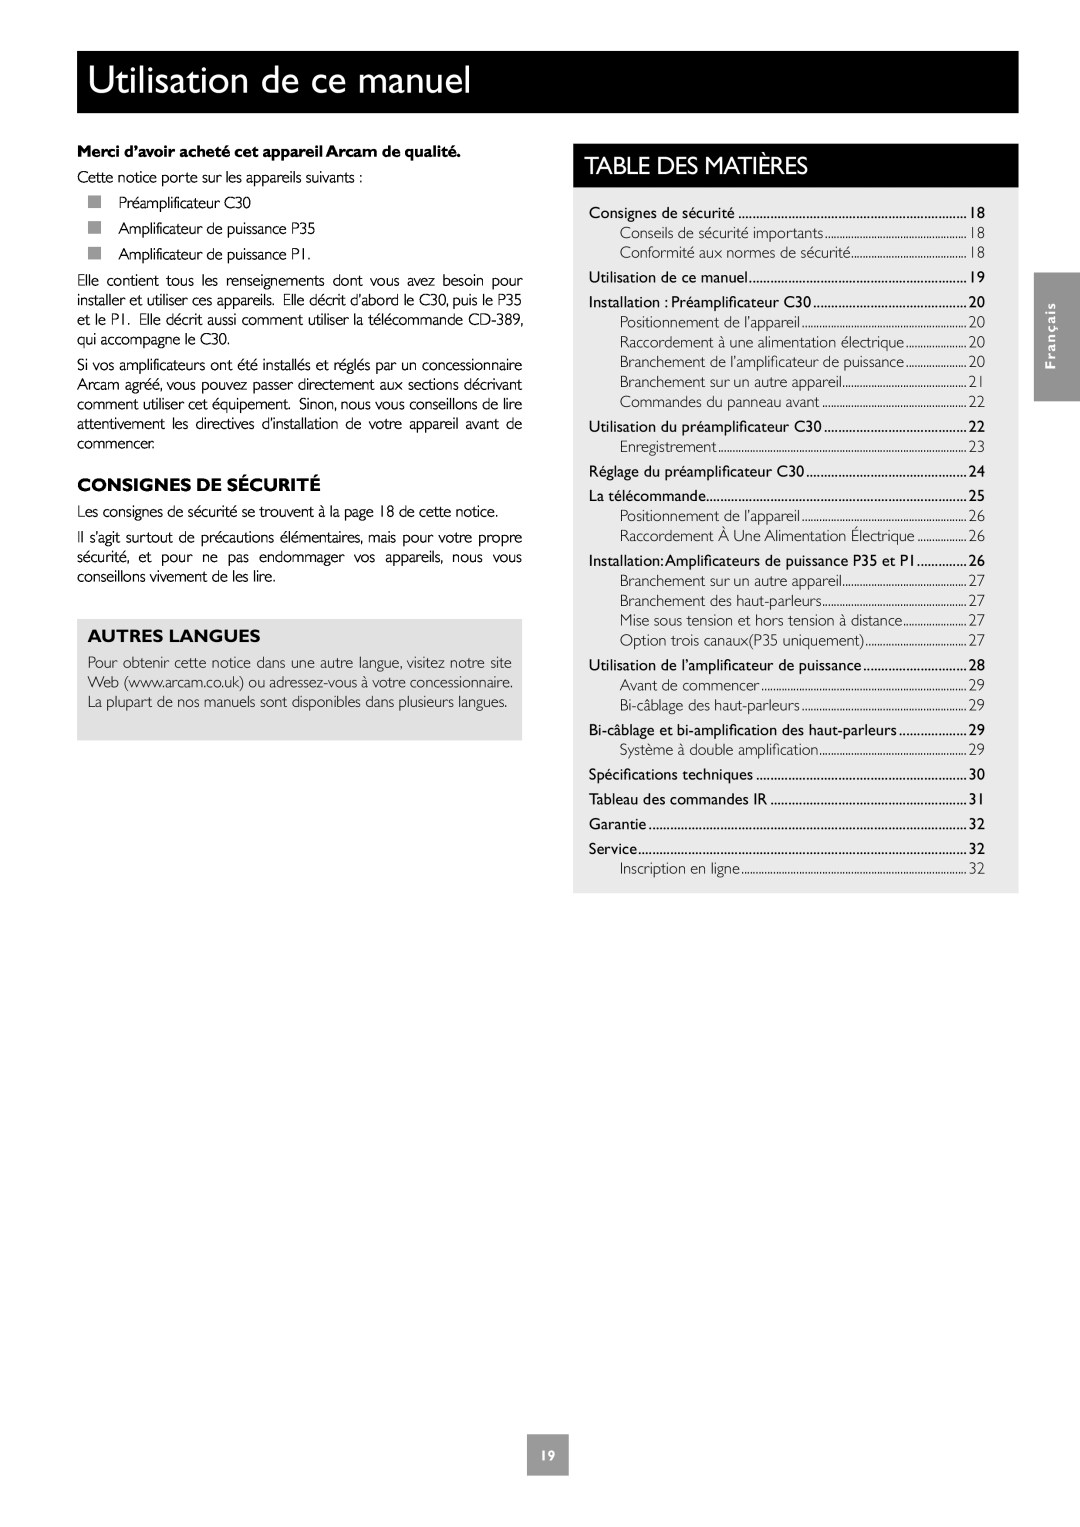 Arcam C30, P35, P1 manual Utilisation de ce manuel, Consignes De Sécurité, Autres Langues, Table Des Matières, Français 